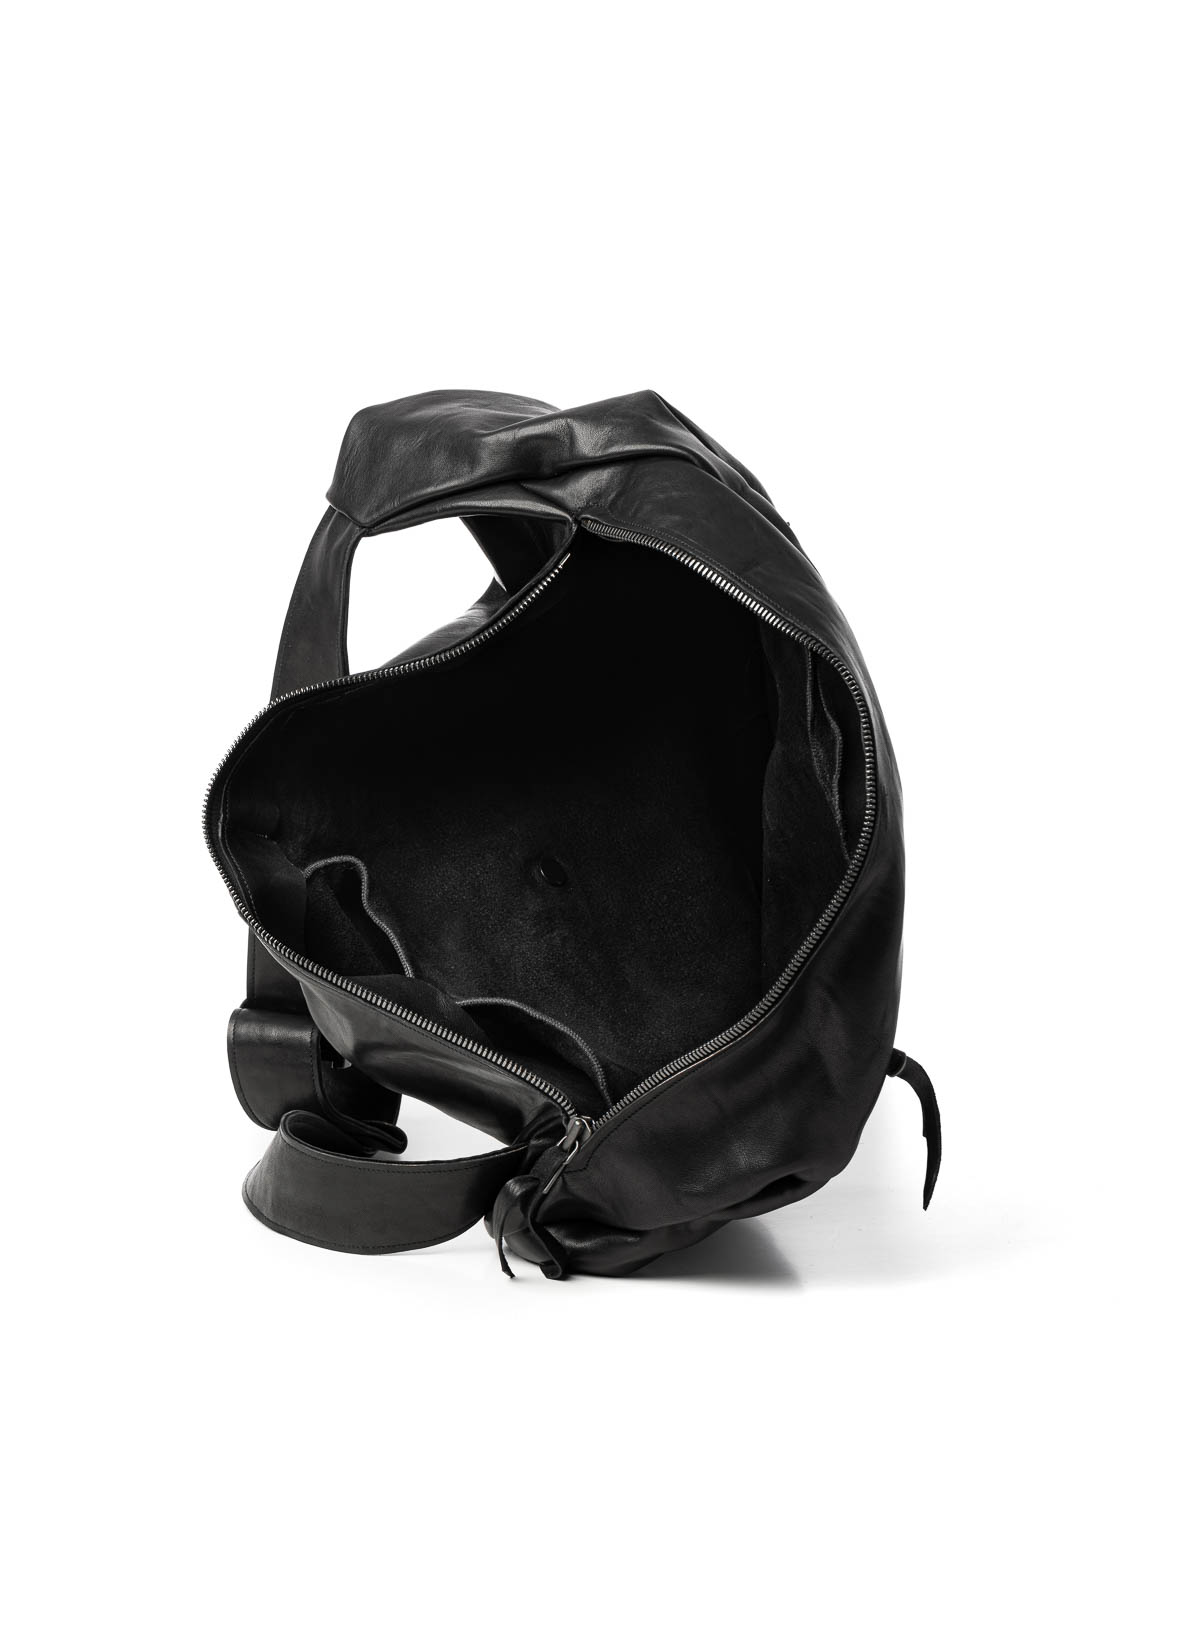 hide-m | LEON EMANUEL BLANCK Dealer Bag XL, black horse leather